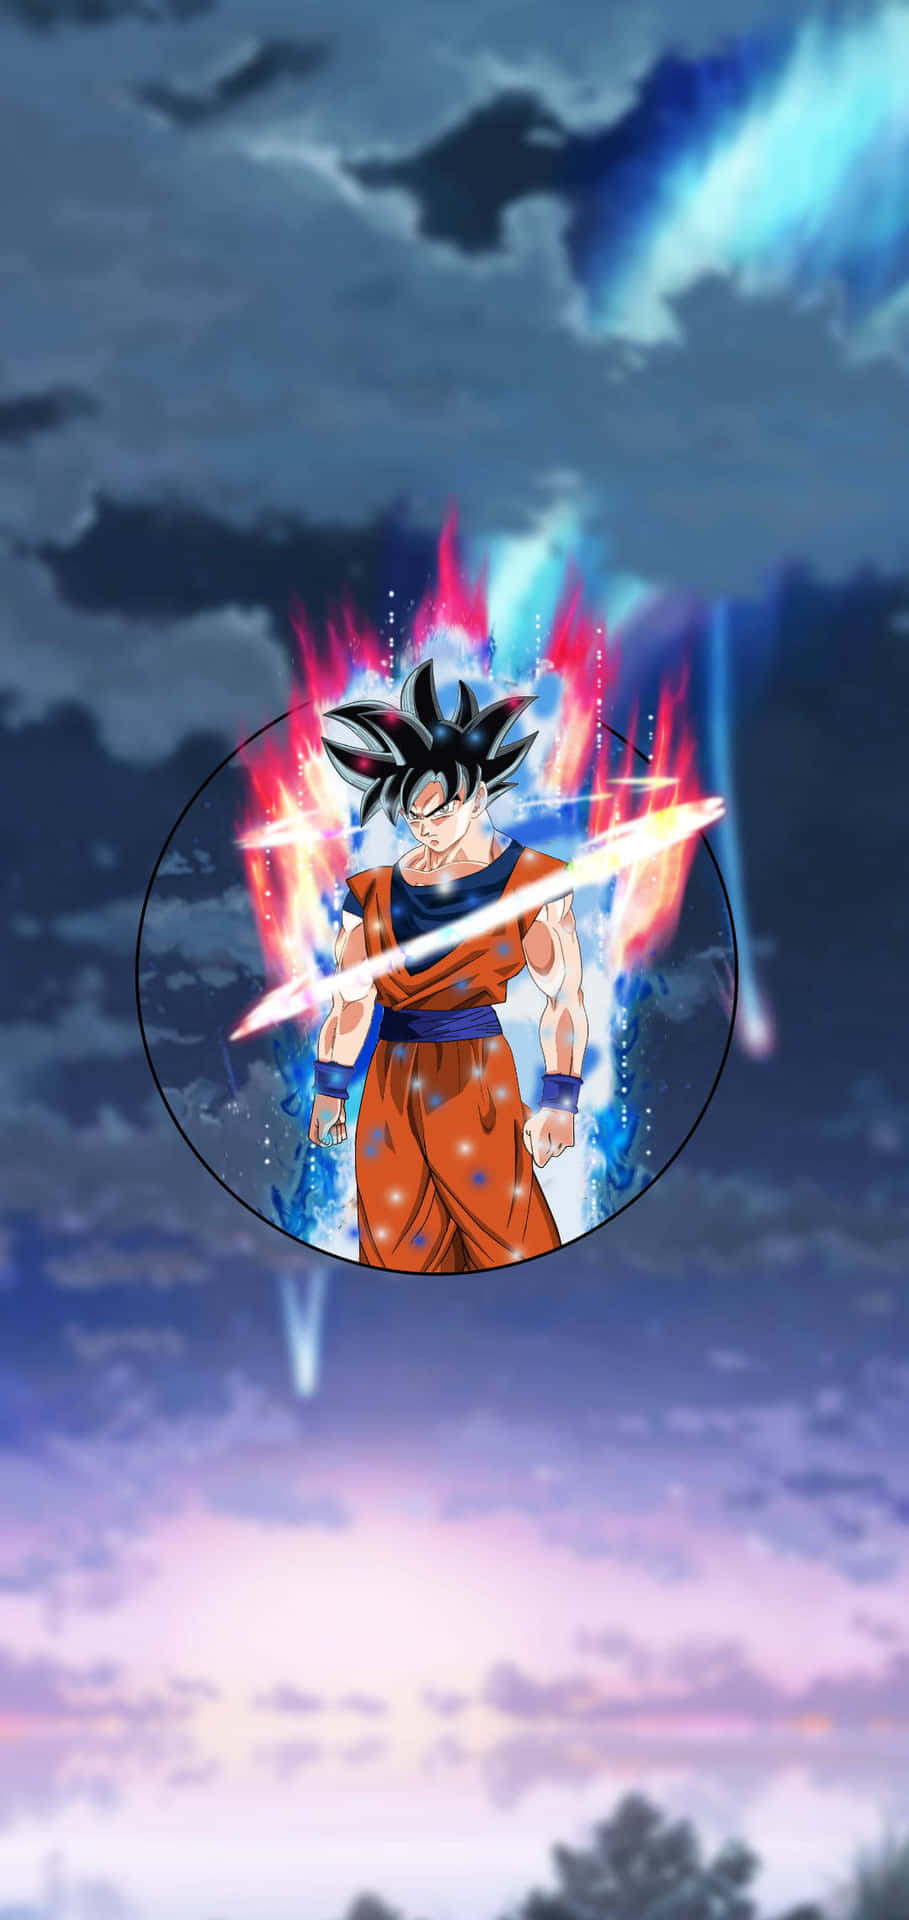 Fundode Tela Bloqueio Do Son Goku De Dragonball Super, Anime. Papel de Parede